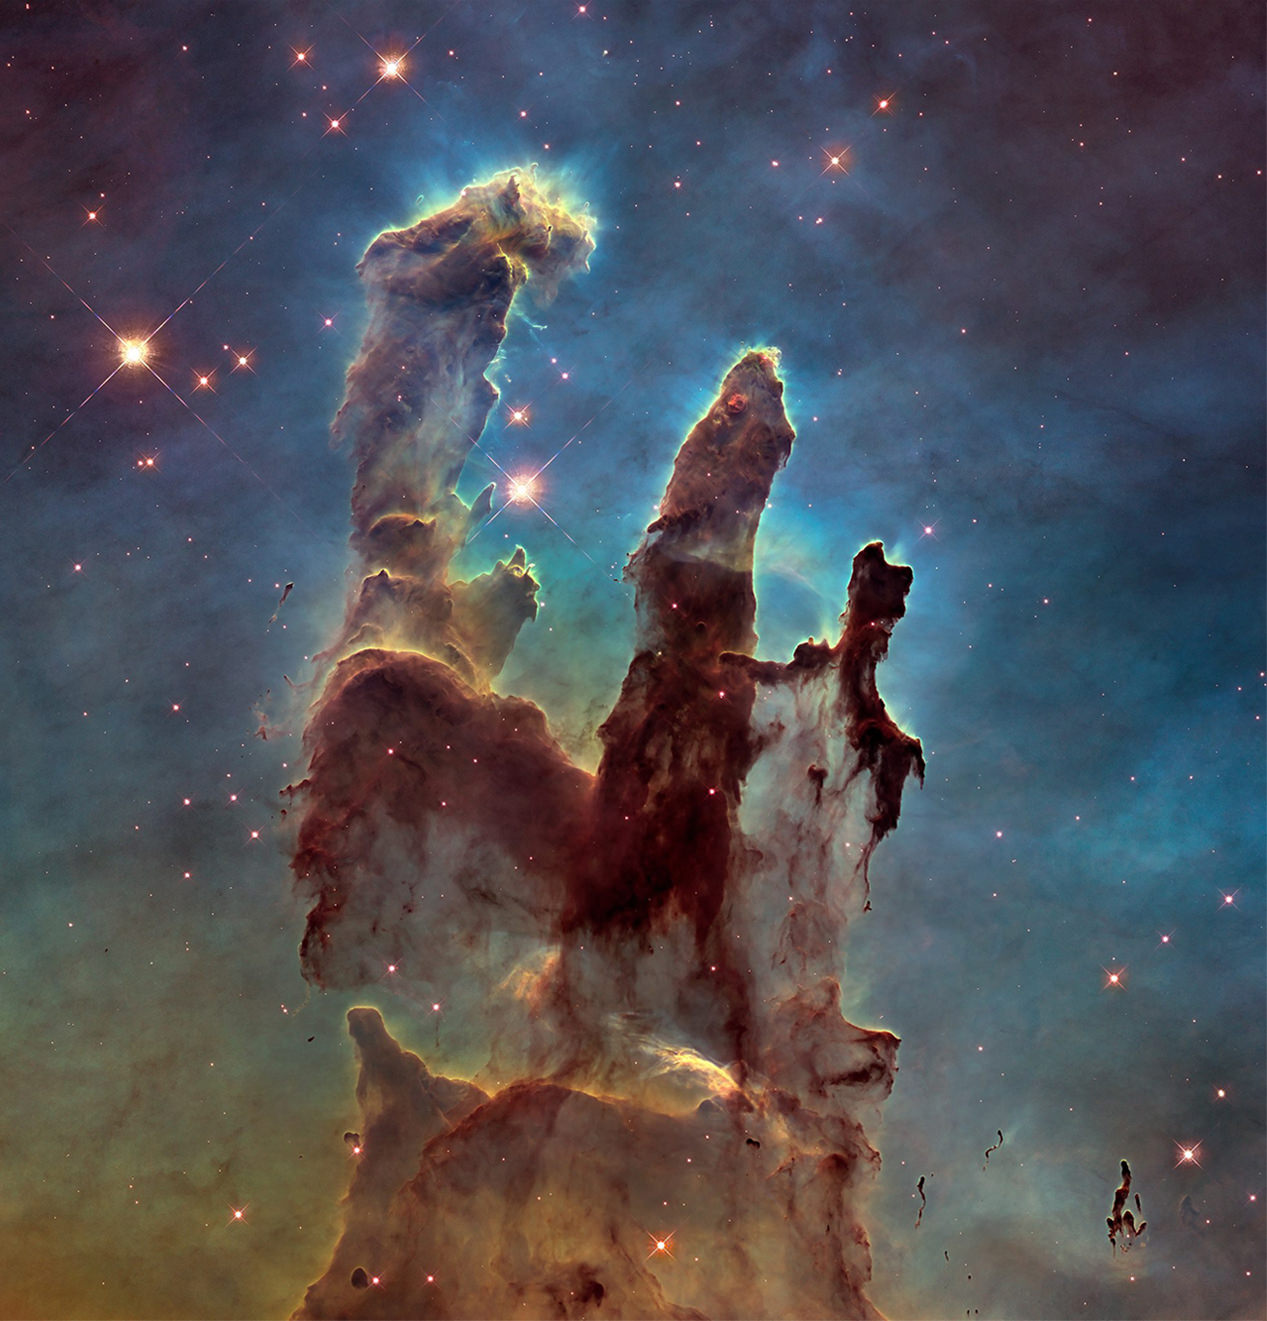 عکس| تلسکوپ جیمزوب ستون‌های آفرینش را به تصویر کشید